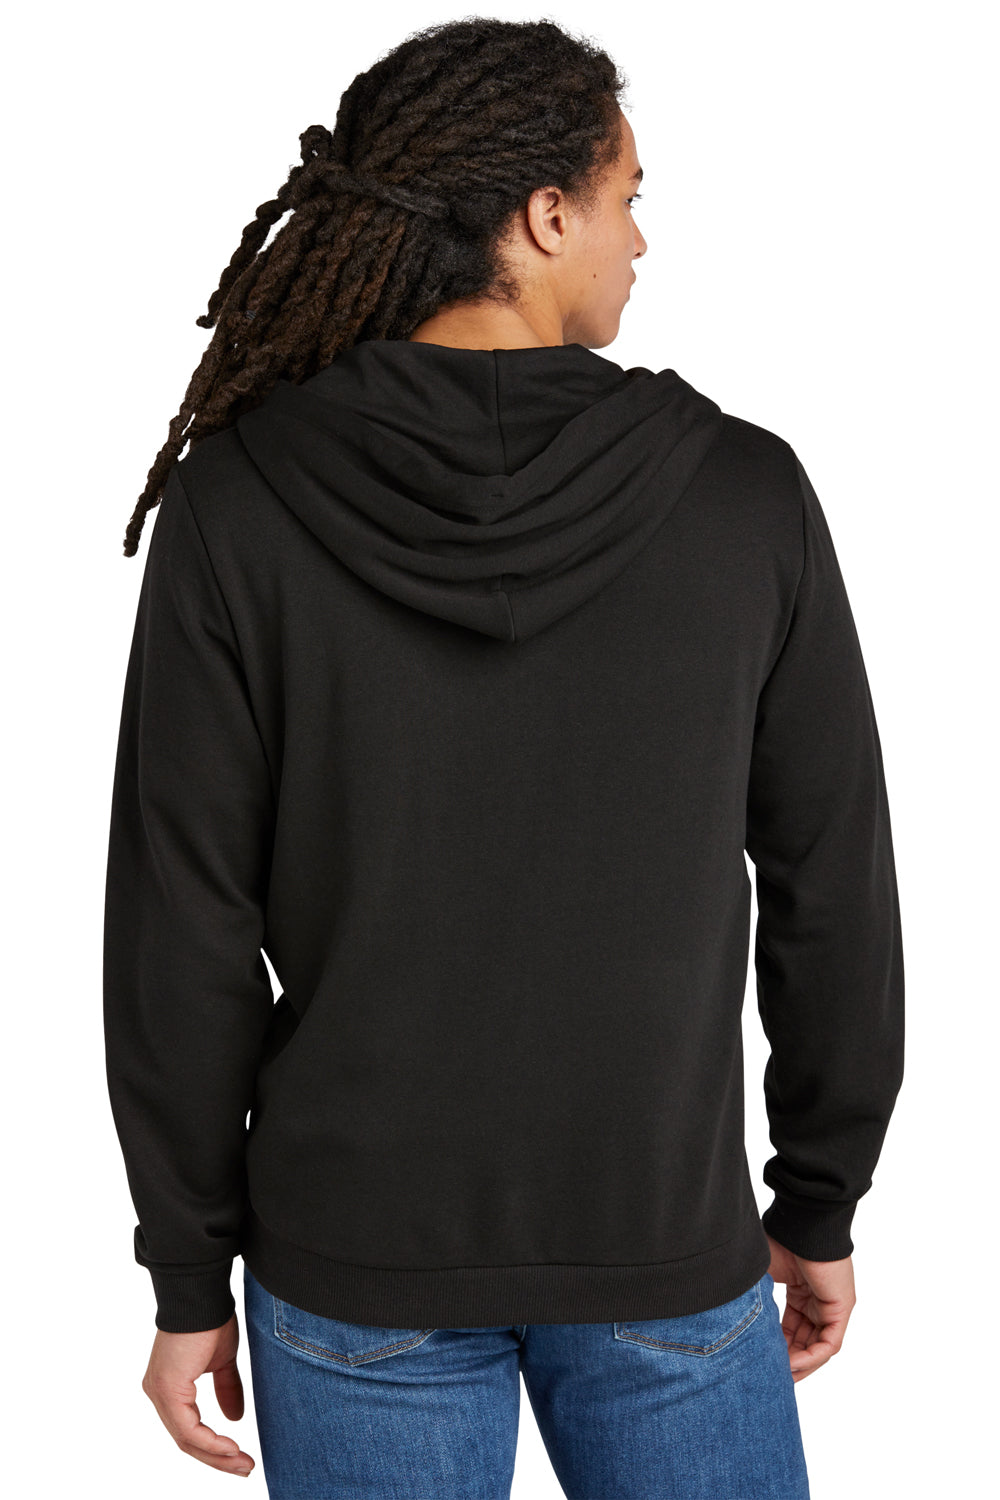 District DT1302 Mens Perfect Tri Fleece Full Zip Hooded Sweatshirt Hoodie Black Back